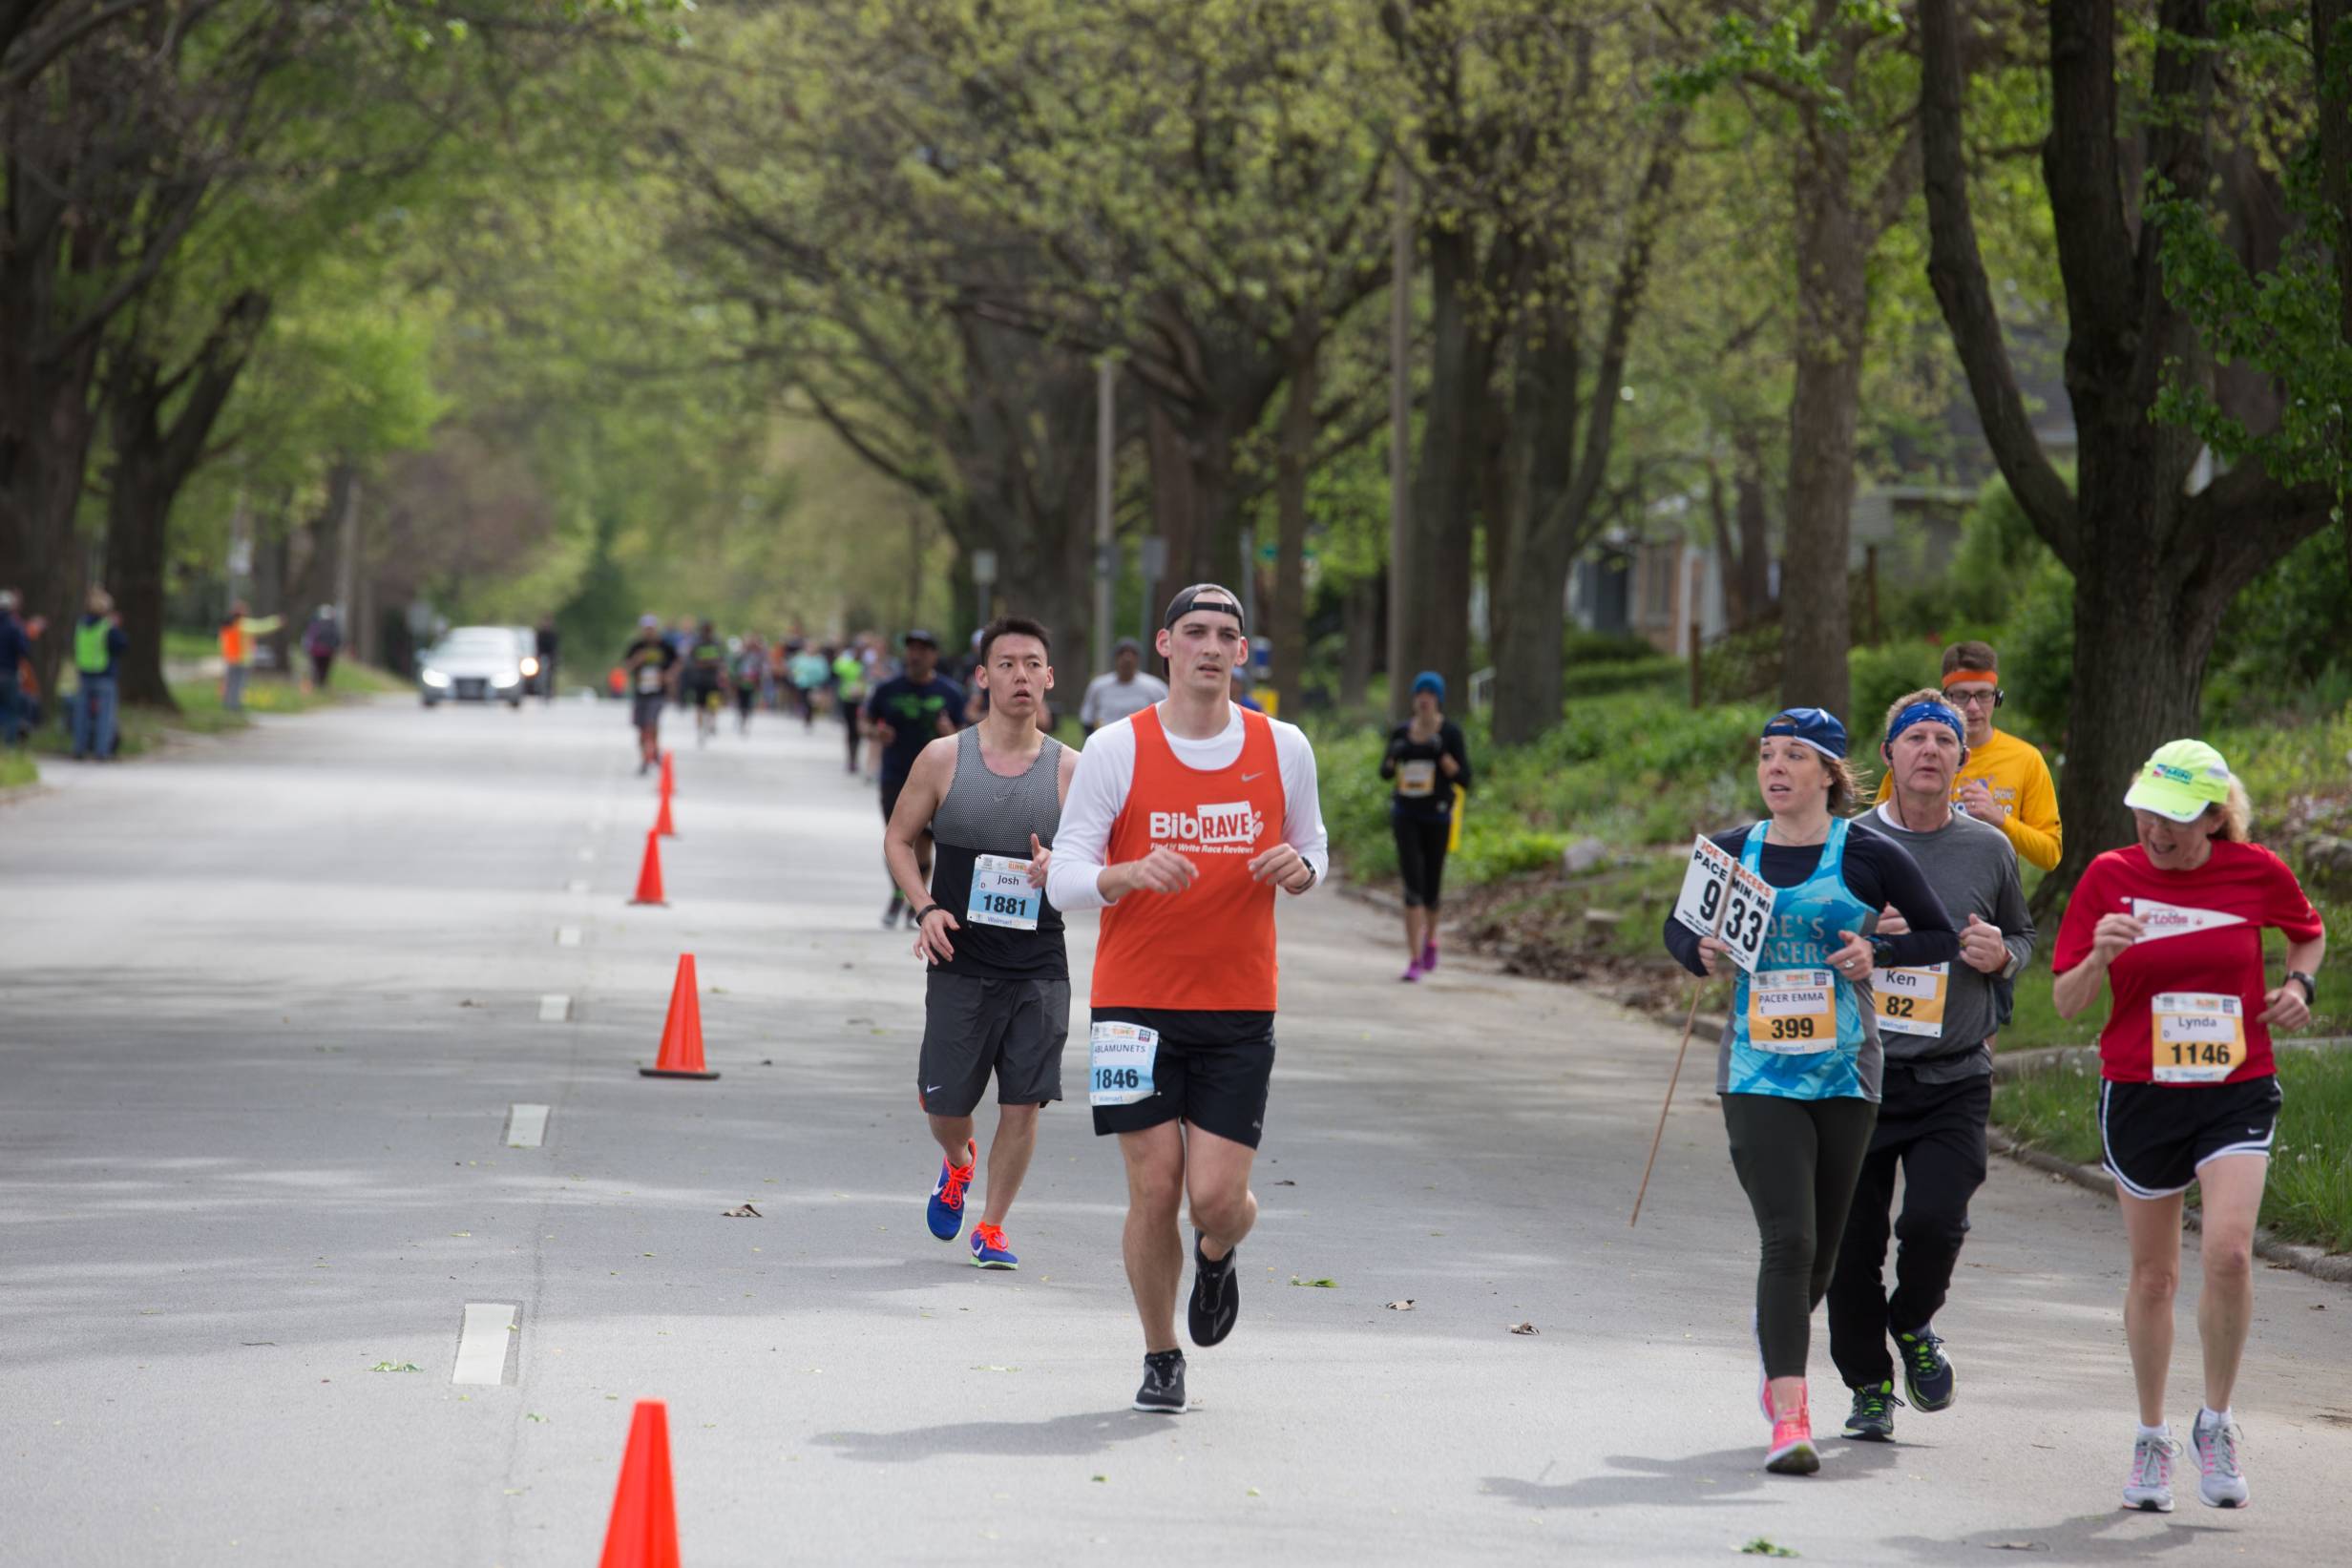 10 photos that make the Illinois Marathon great